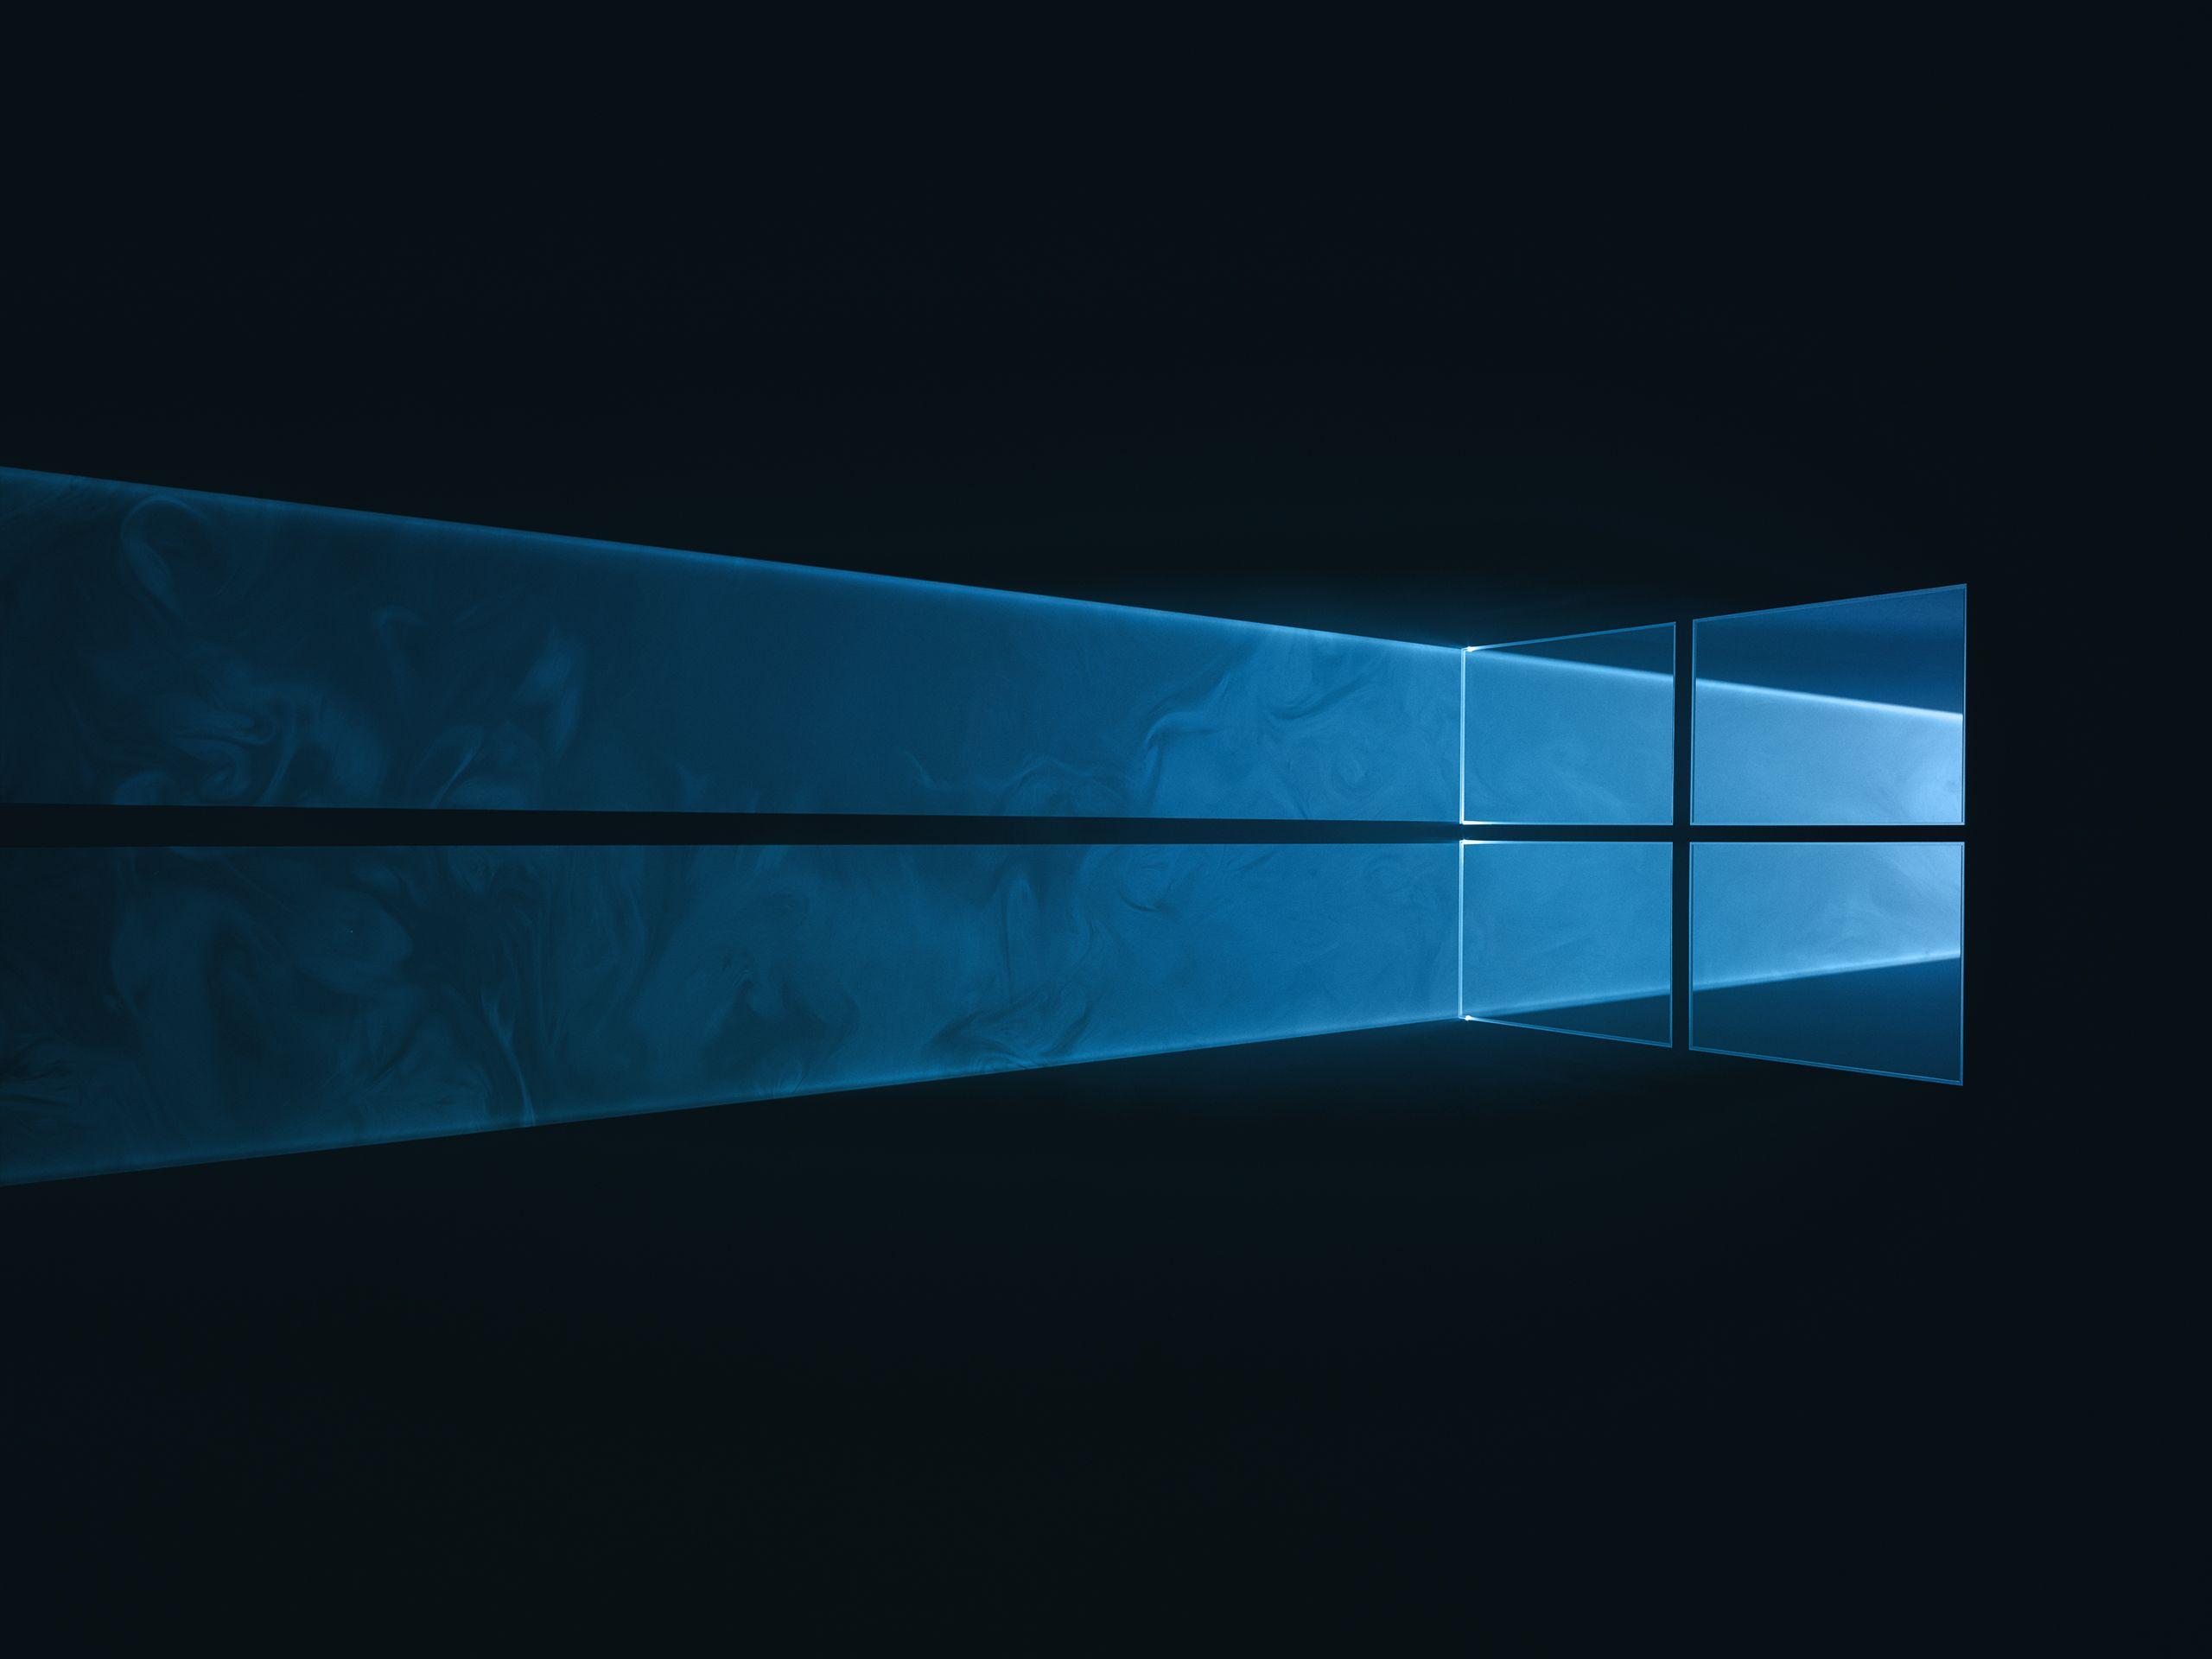 Windows 10 Dark Wallpapers - Top Free Windows 10 Dark Backgrounds